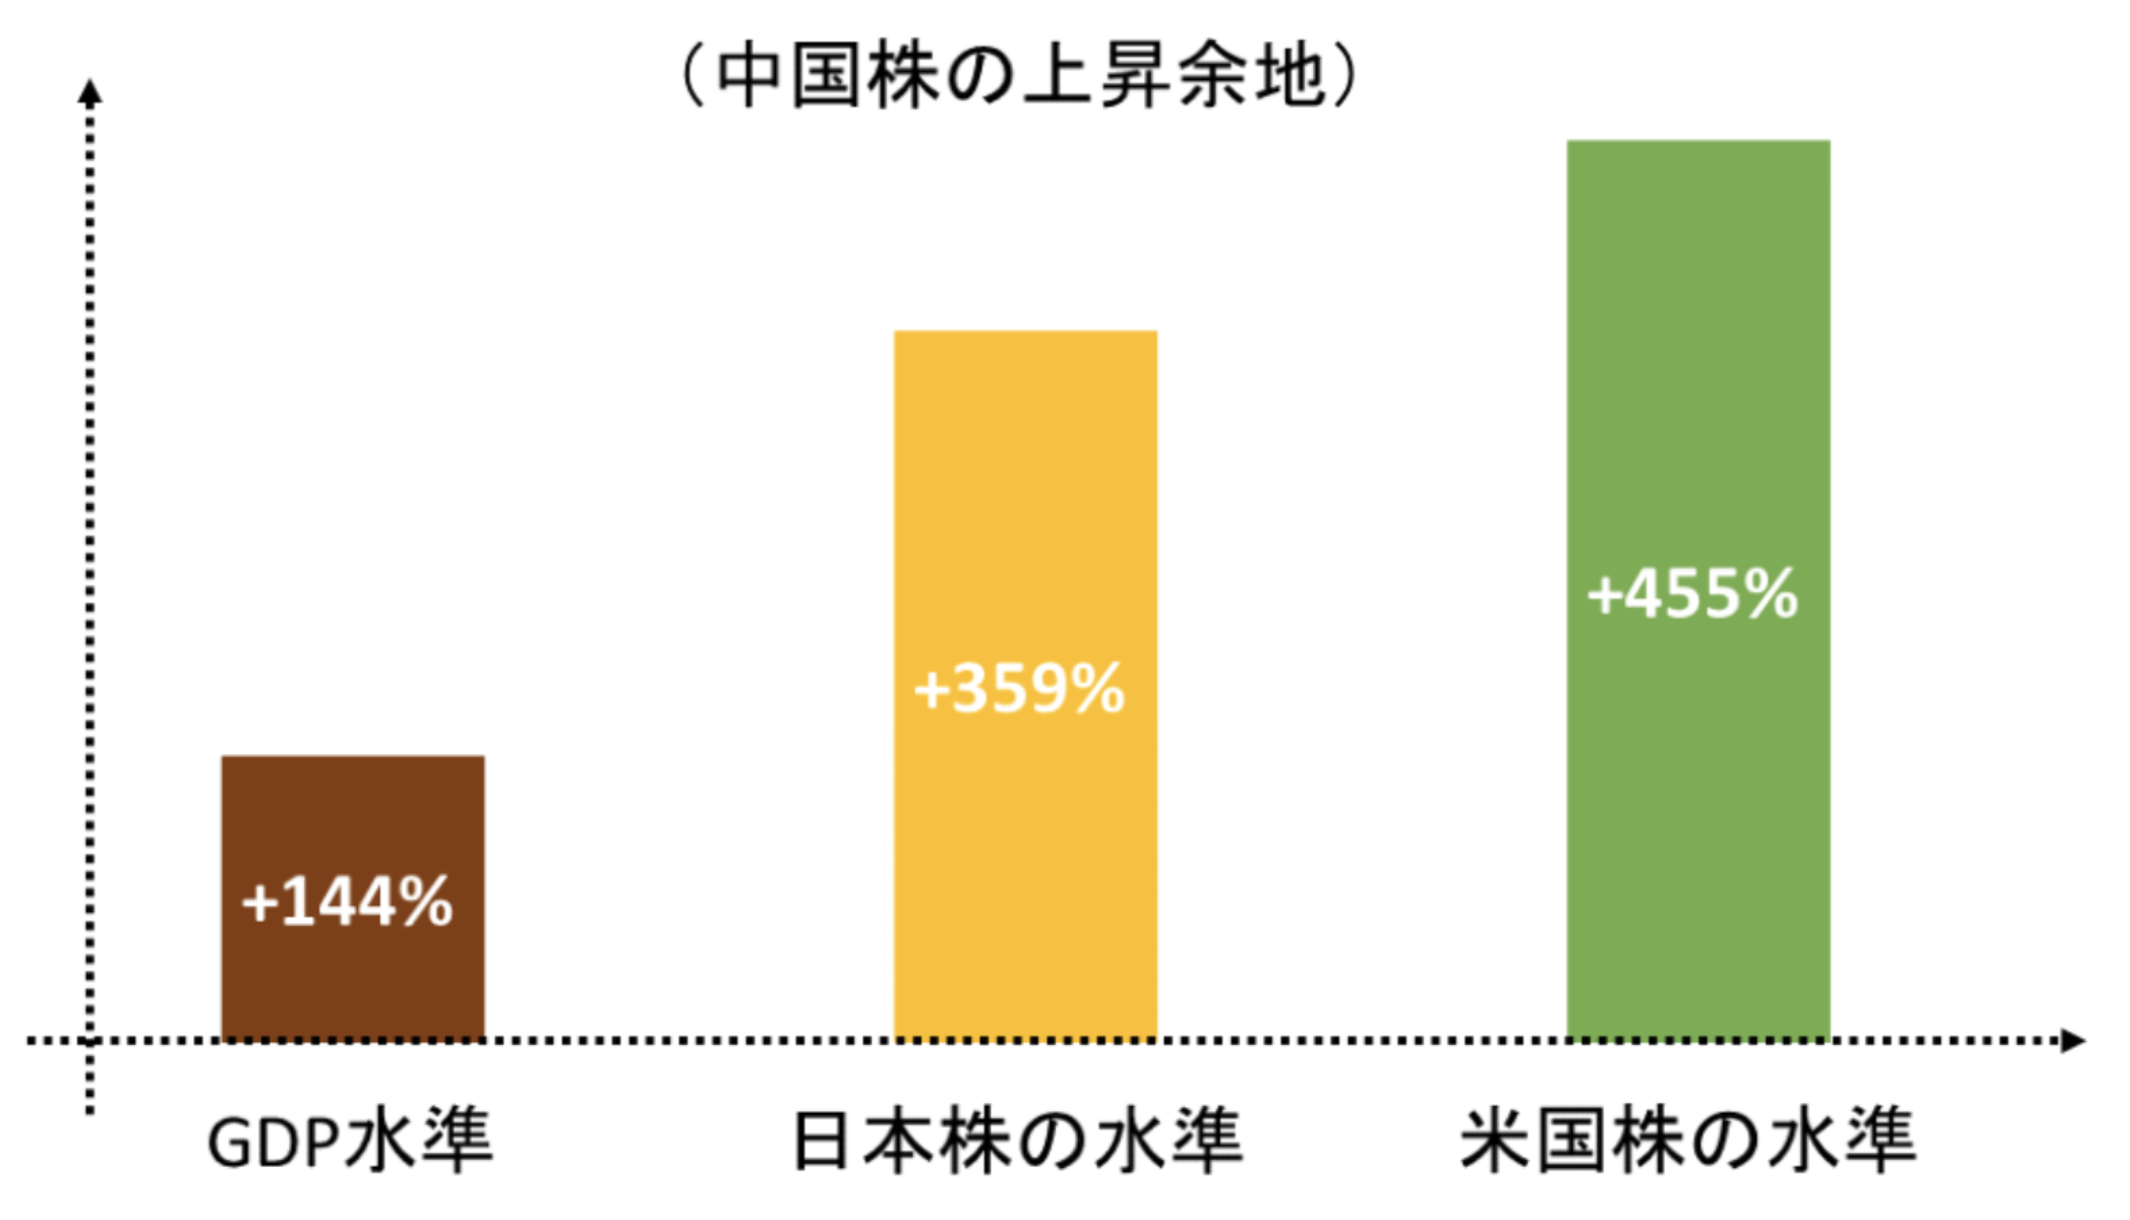 中国株は日本株や米国株水準に上昇すると大きく上昇する余地がある